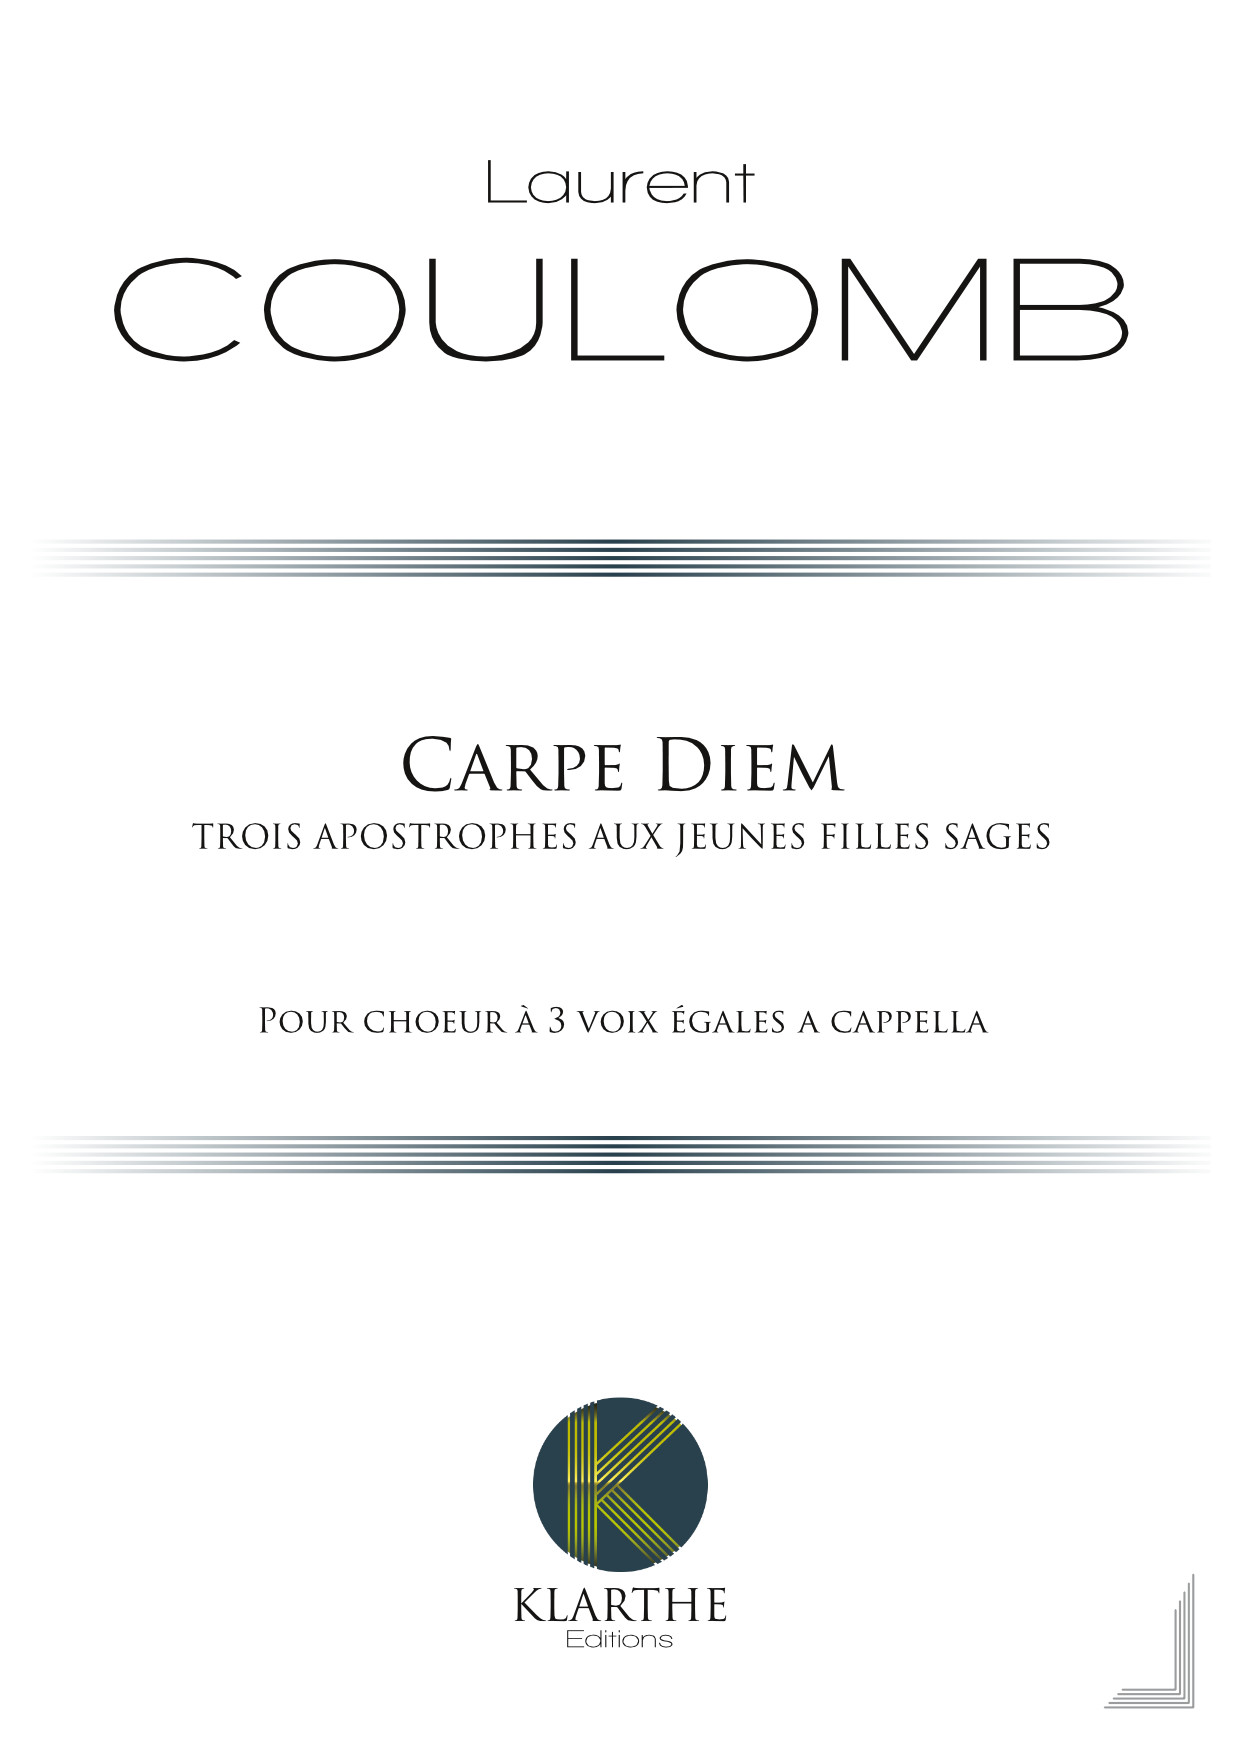 Carpe diem, opus 36 (COULOMB LAURENT)